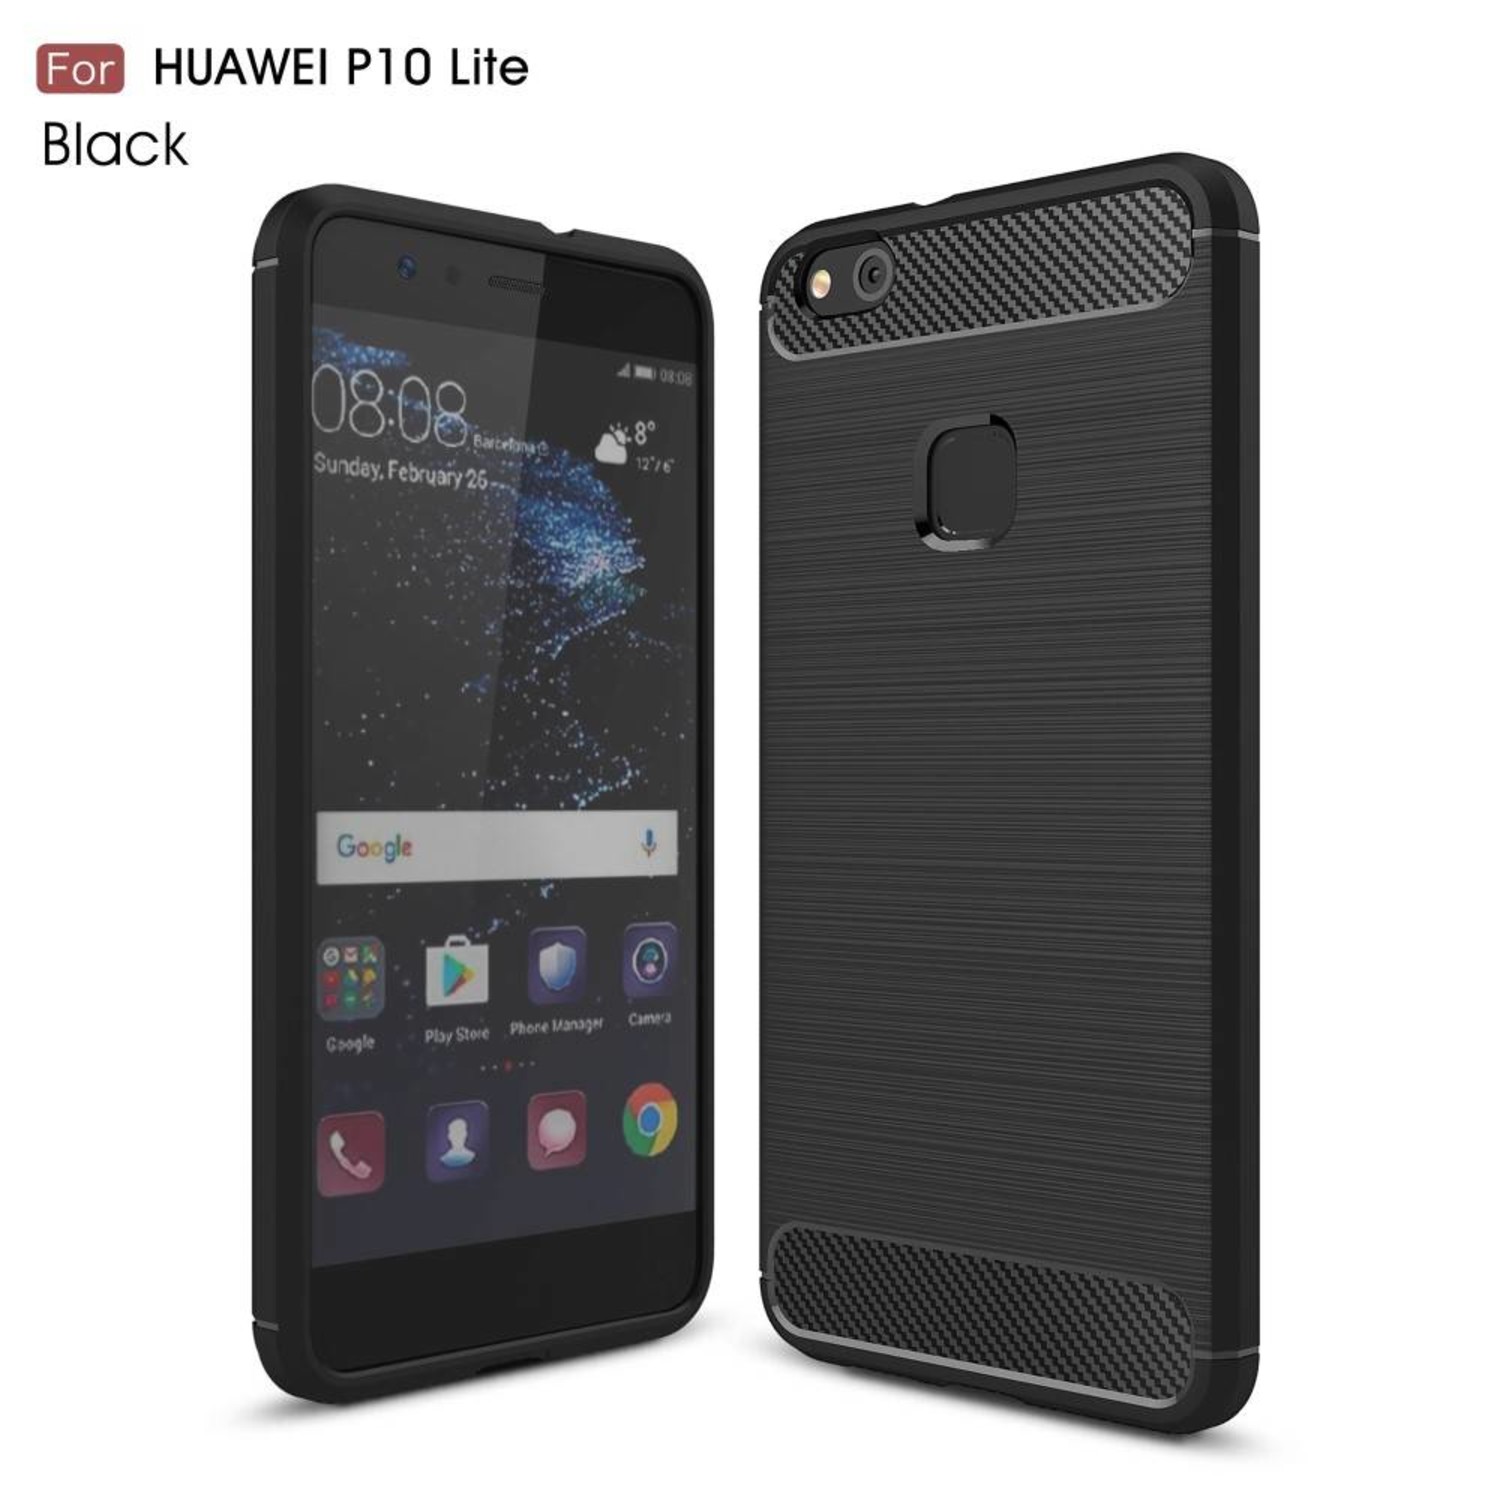 Mangel Ontaarden een miljard Carbon Fibre Brushed TPU Hoesje Huawei P10 Lite - Zwart - Telefoonhoesjes  kopen? Bestel je hoesje snel op Telefoonhoesjestore.nl!